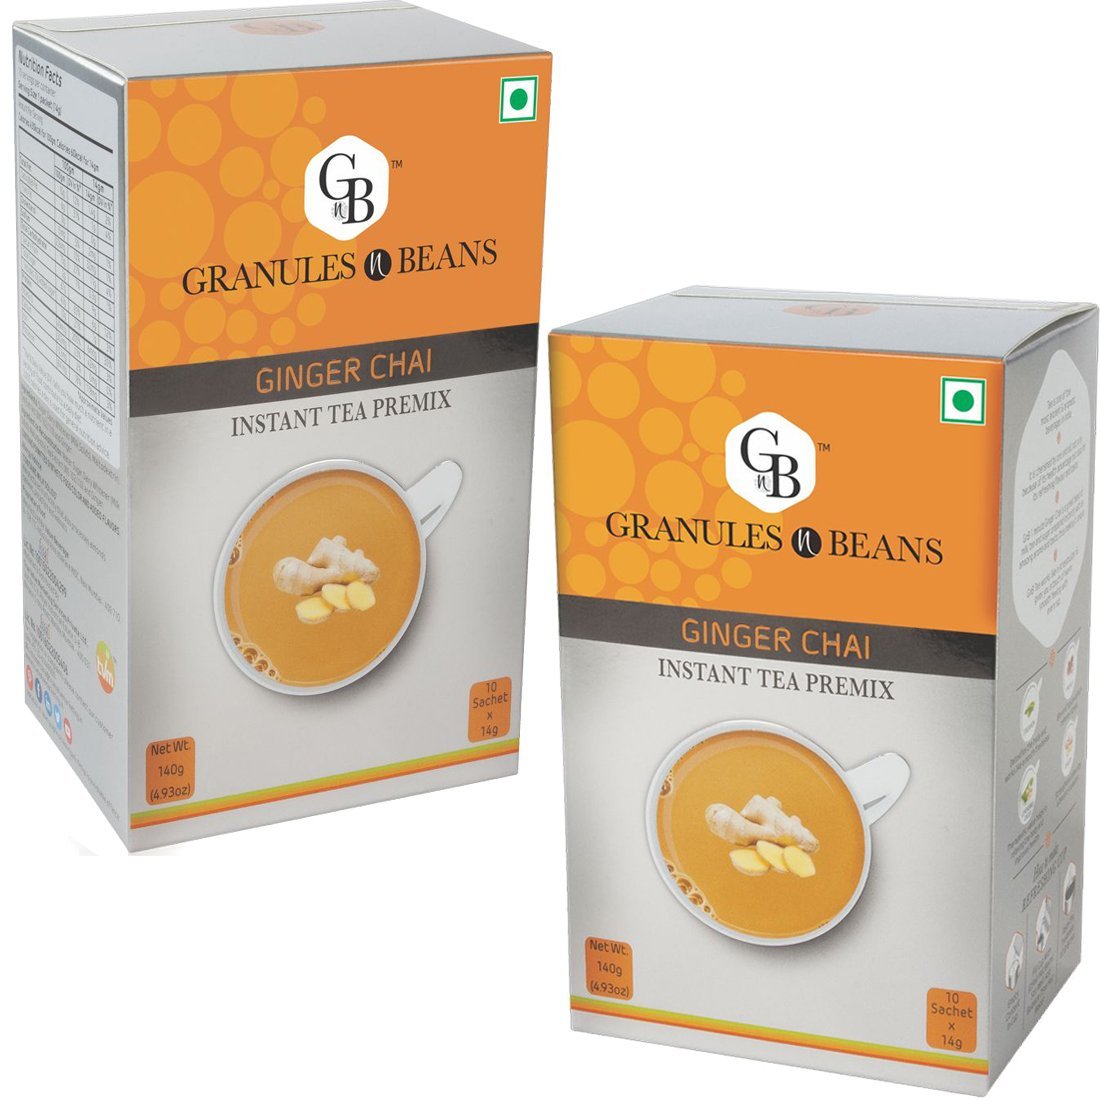 Granules n Beans Ginger Chai Instant Tea Premix - (10 Sachet x 14g = 140g) (Pack of 2)